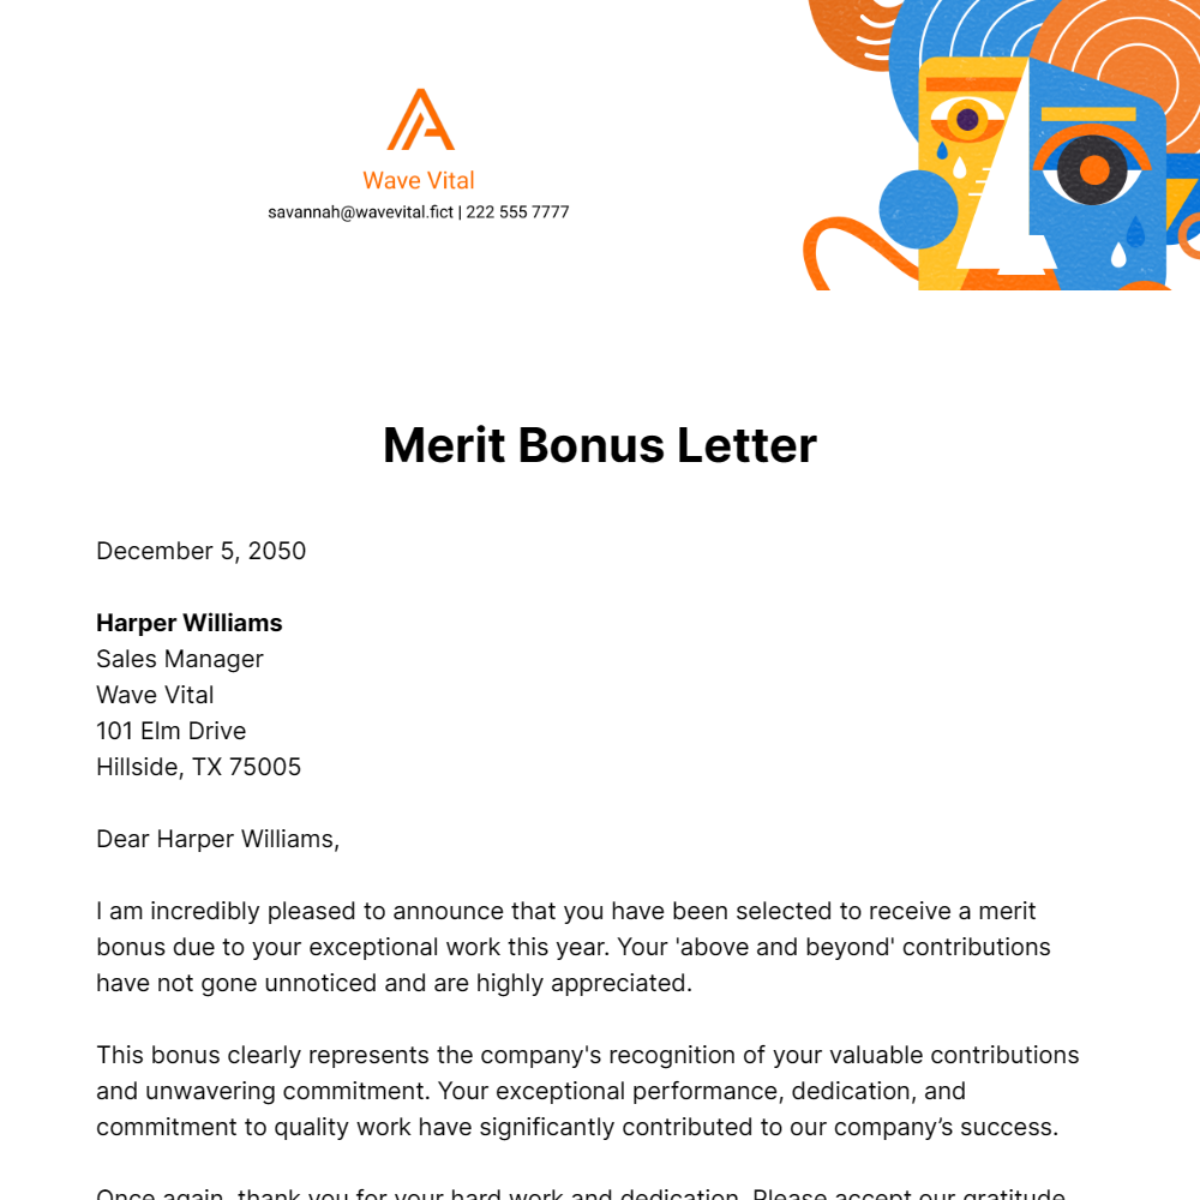 Merit Bonus Letter Template